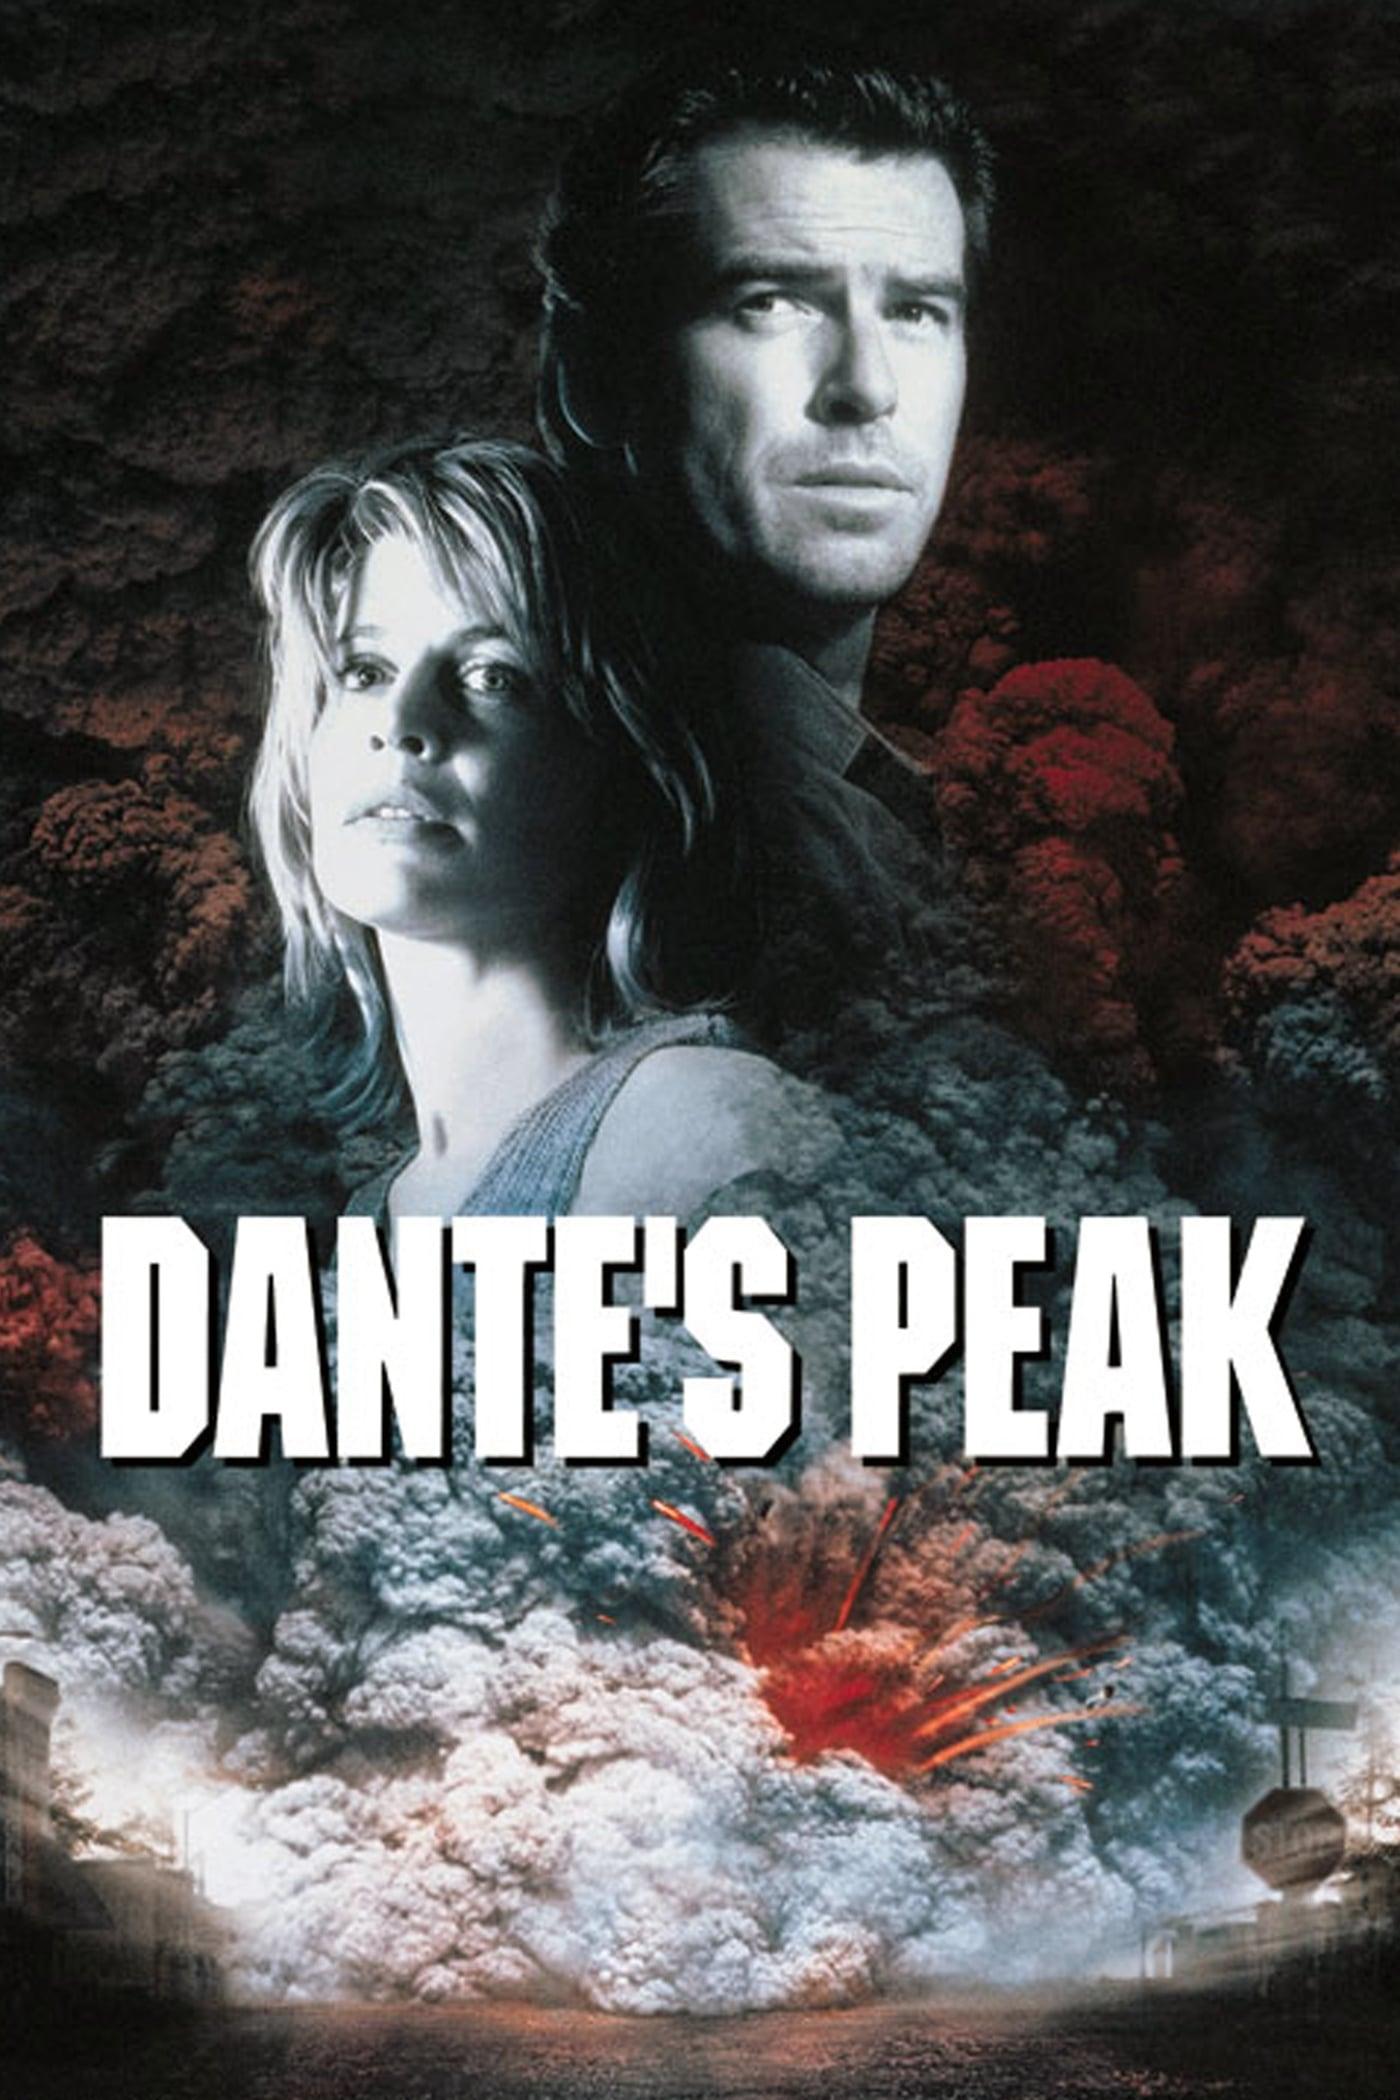 Dante's Peak poster